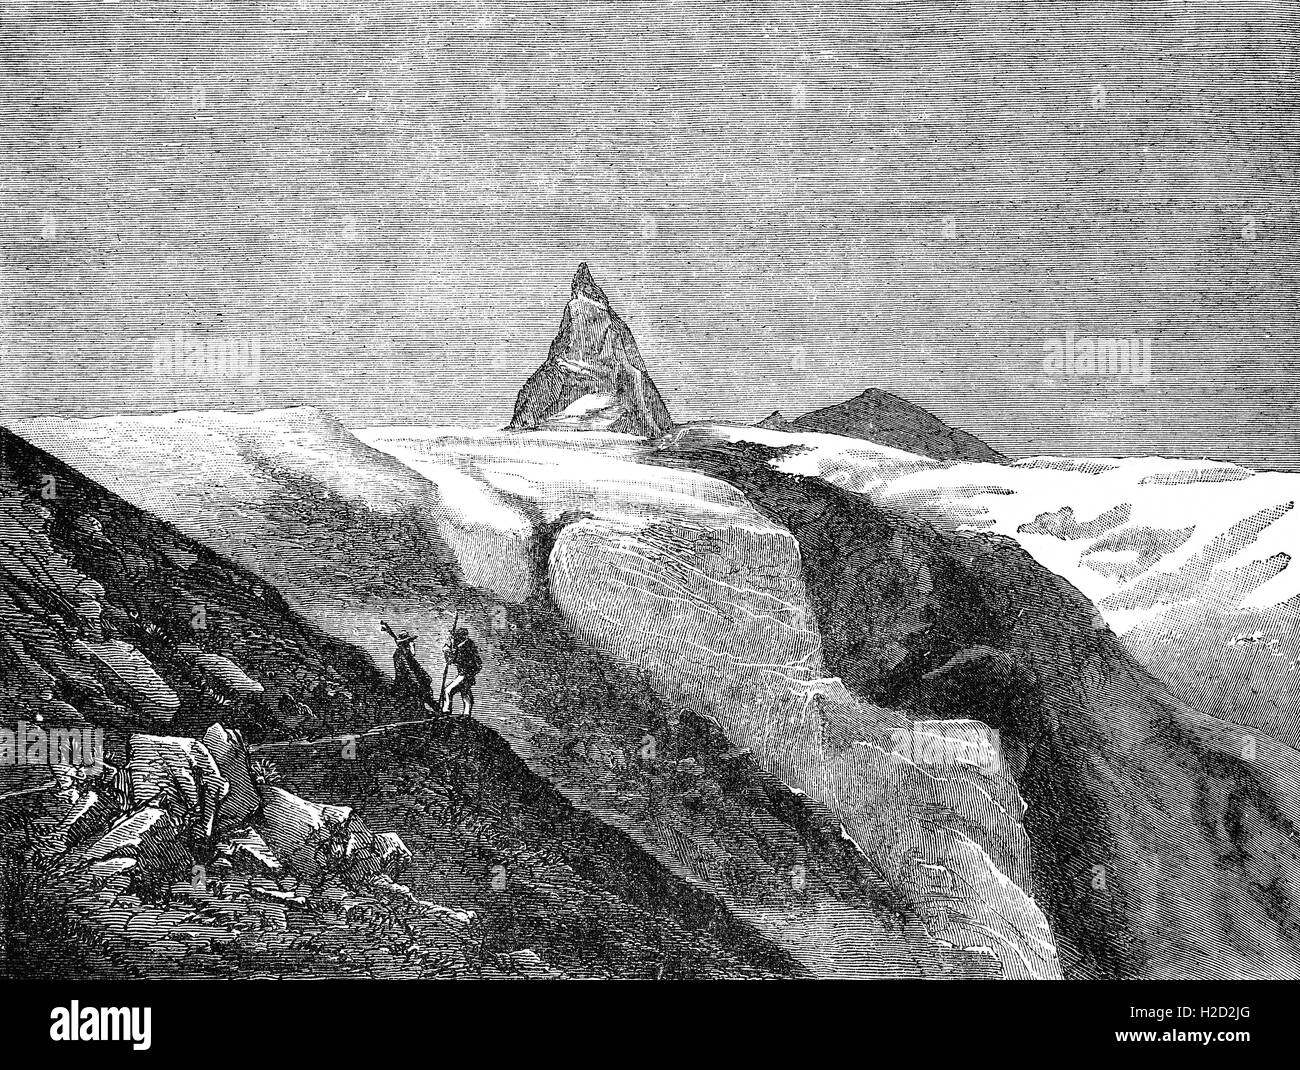 19. Jahrhundert Skizze von Bergführern anzeigen das Matterhorn, ein Berg der Alpen, gebietsübergreifenden die Hauptwasserscheide und die Grenze zwischen der Schweiz und Italien. Es ist eine riesige und in der Nähe von symmetrischen pyramidalen Spitze im erweiterten Bereich der Monte Rosa der Walliser Alpen, dessen Gipfel 4.478 Meter (14.692 ft) hoch ist, so dass es eines der höchsten Gipfel in den Alpen und in Europa. Stockfoto